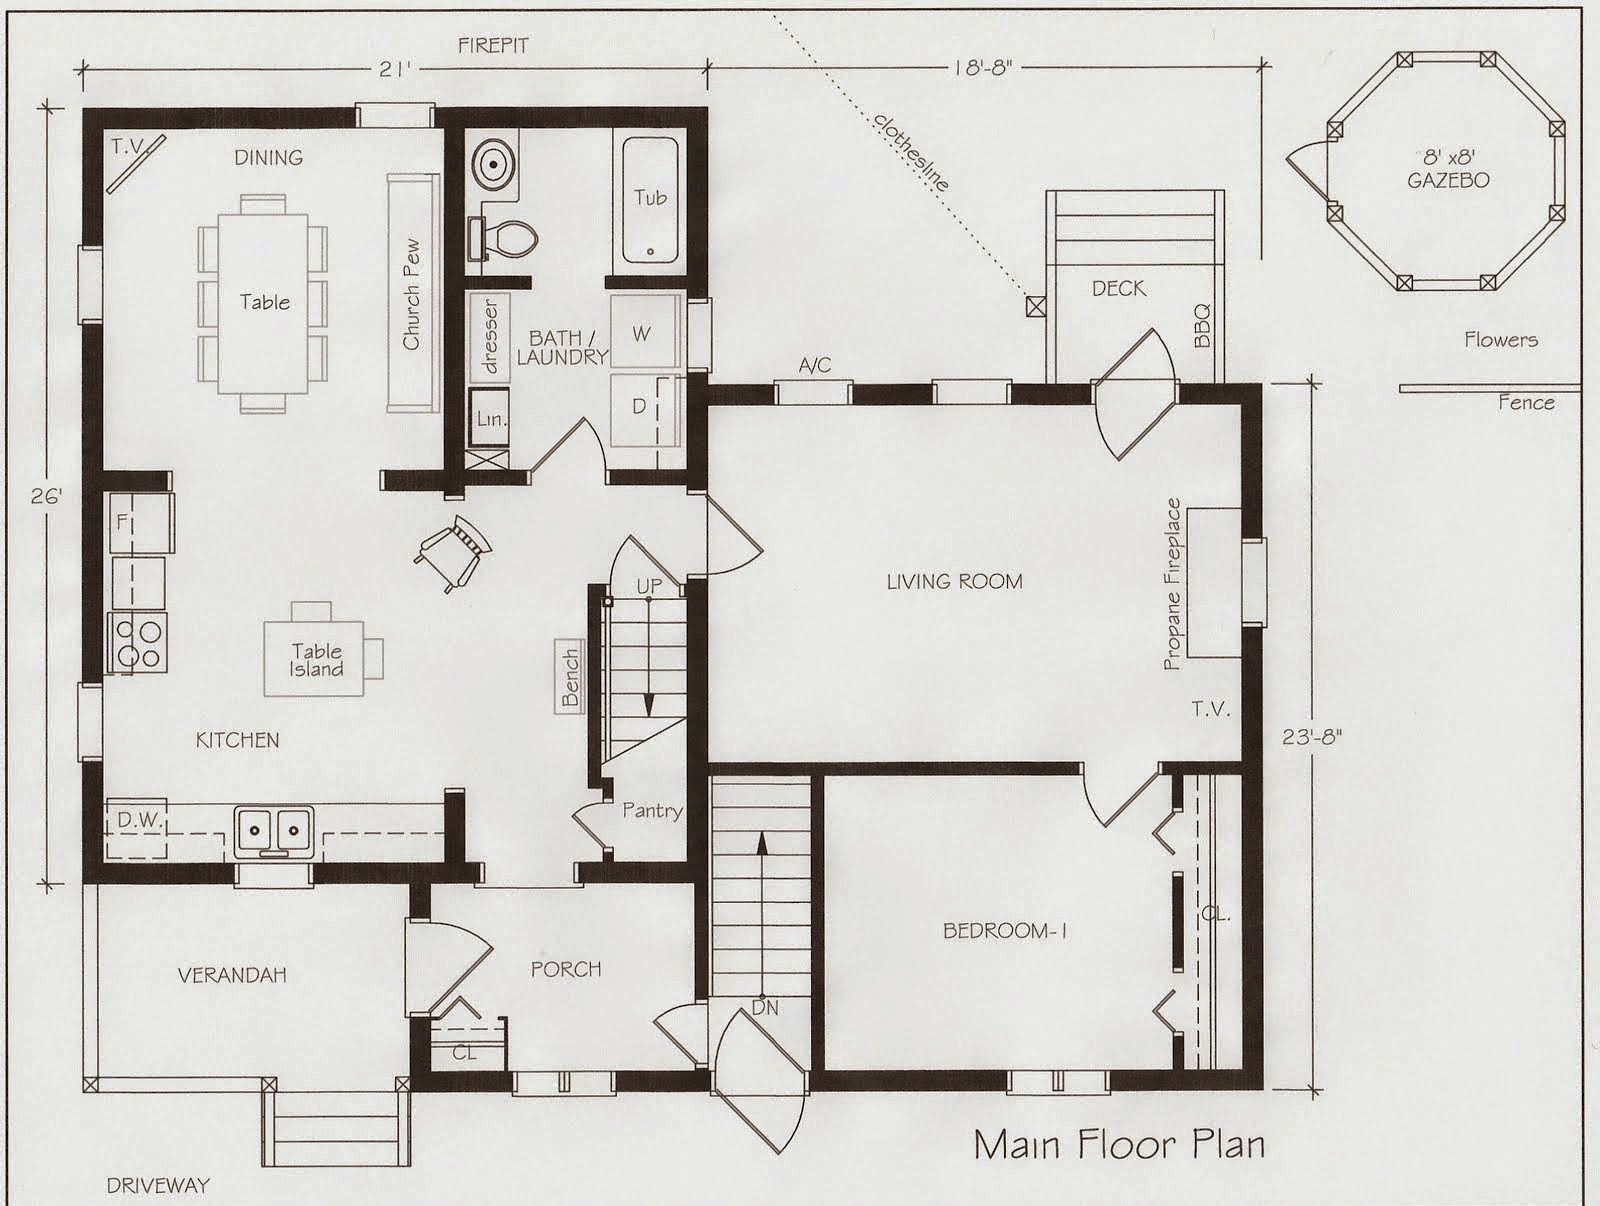 Anne Of Green Gables House Floor Plan